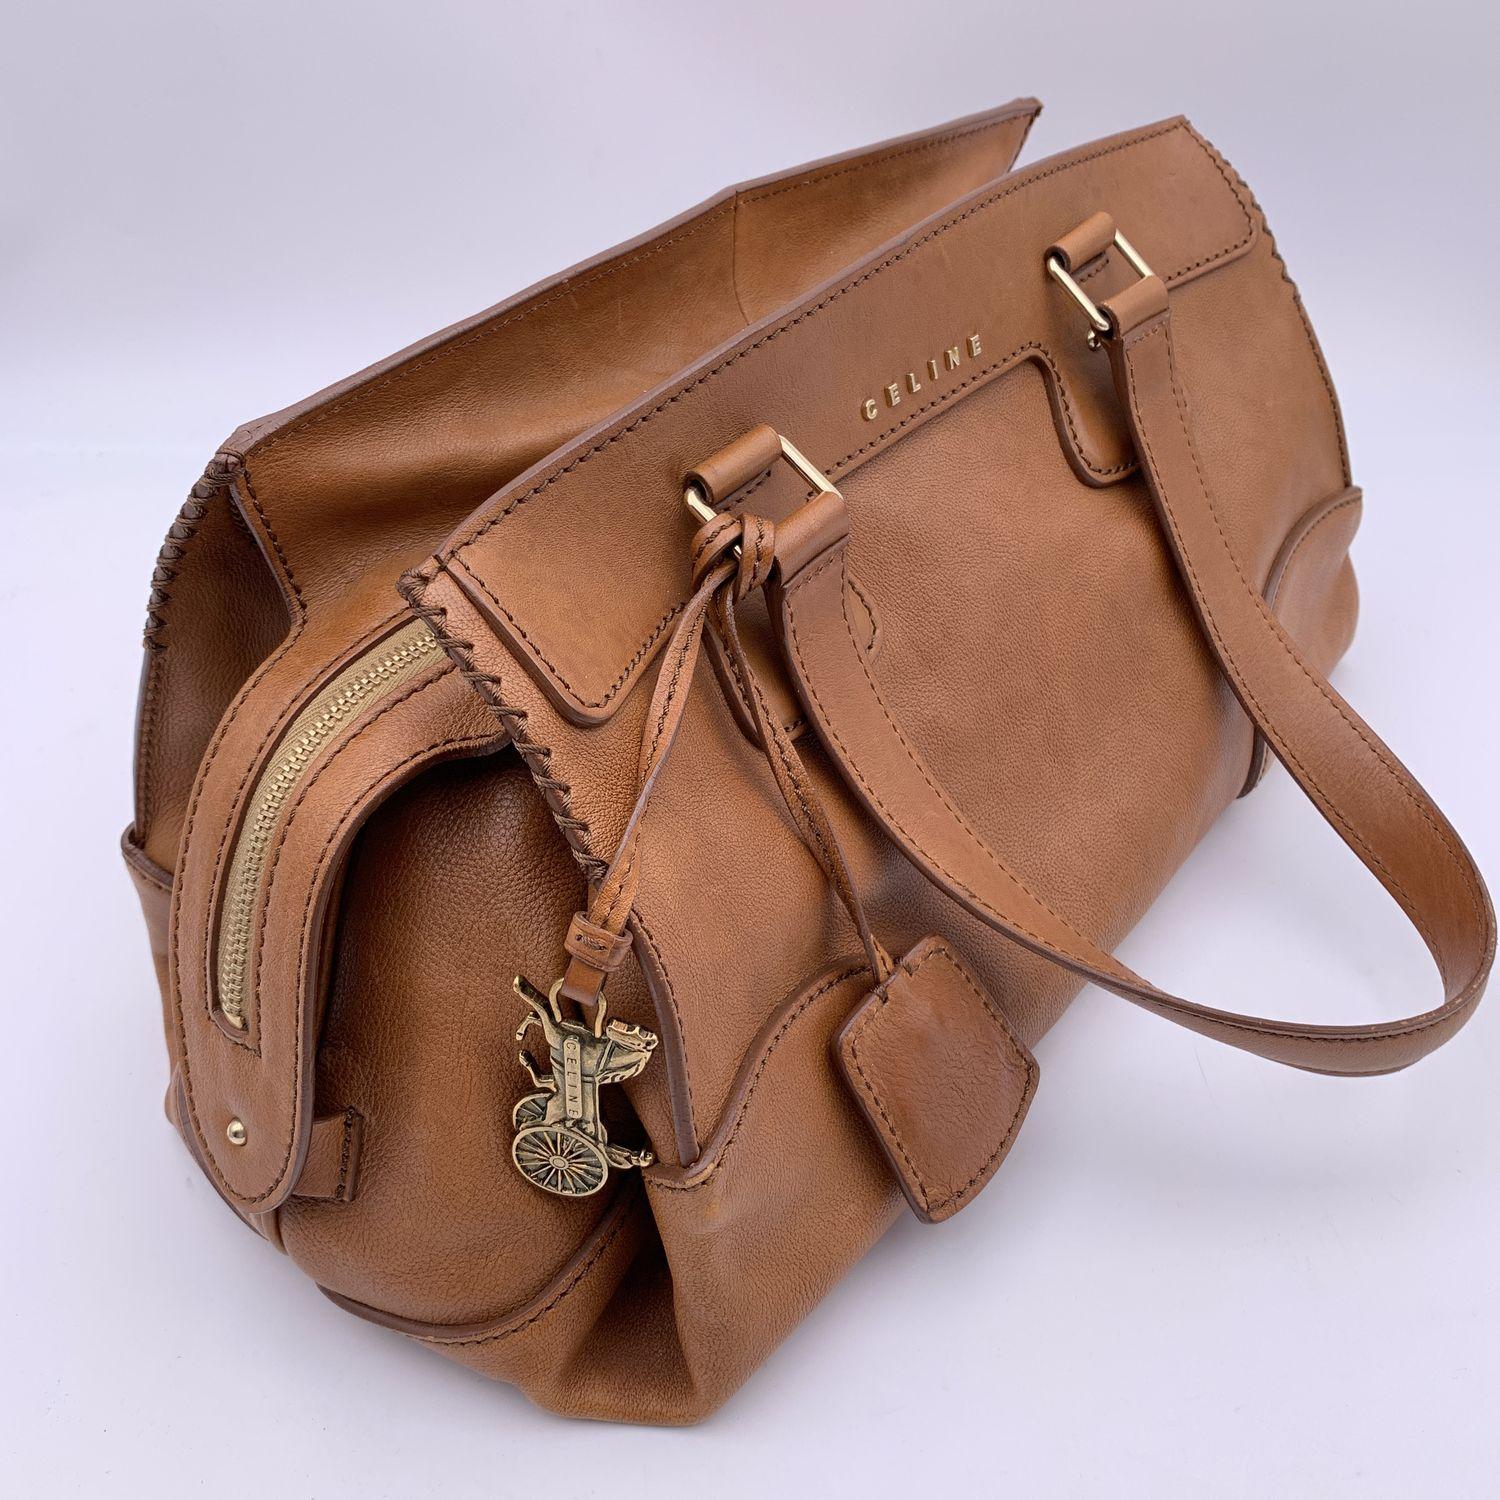 Celine Brown Leather Orlov Bag Shoulder Bag Handbag 2